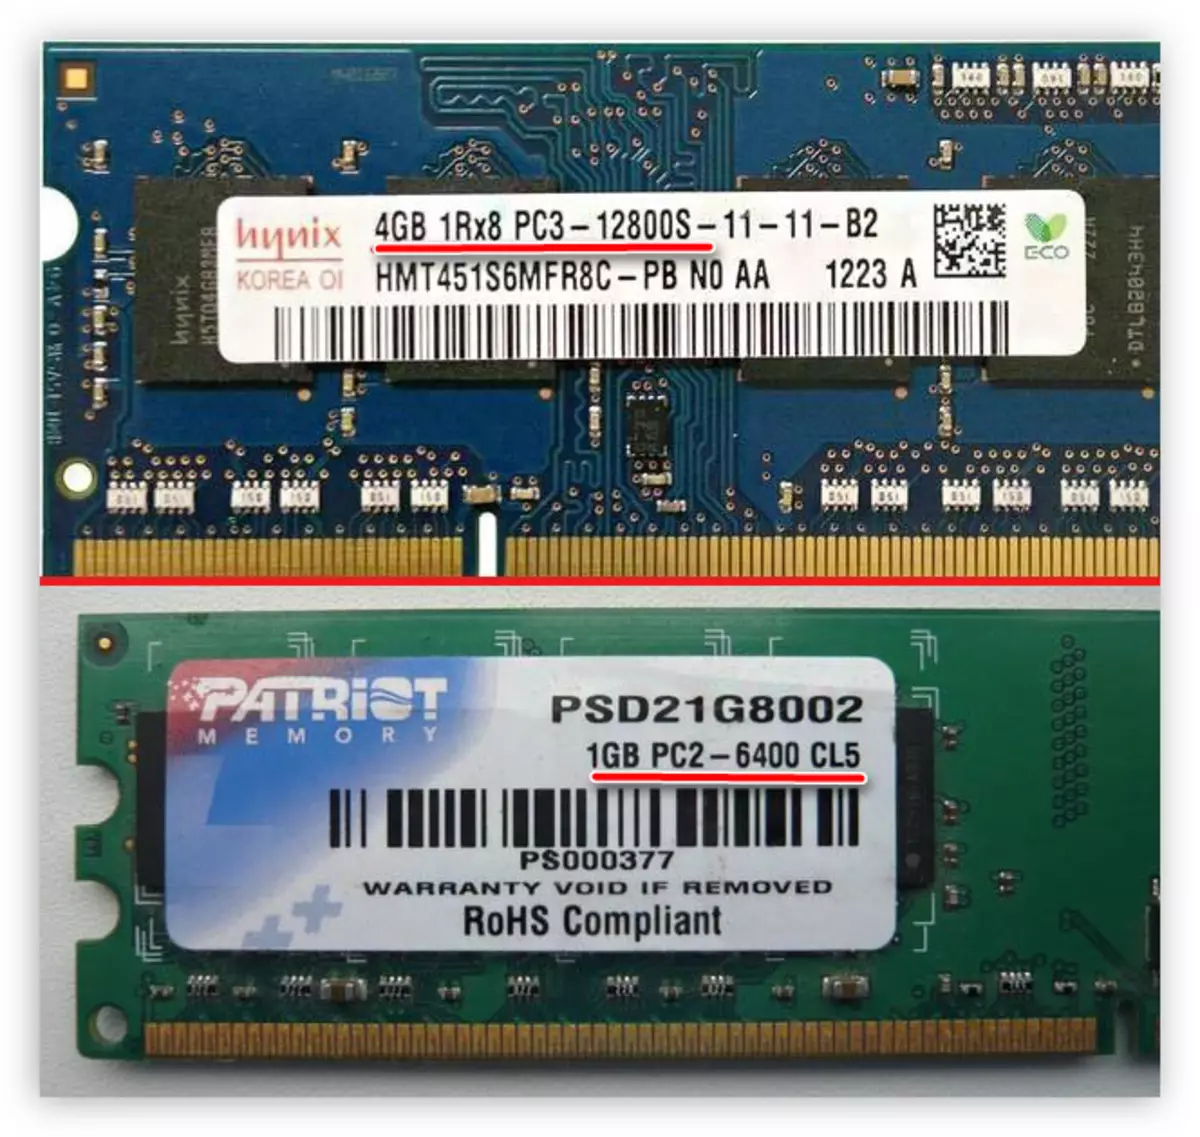 bandwidth type specified on RAM sticker